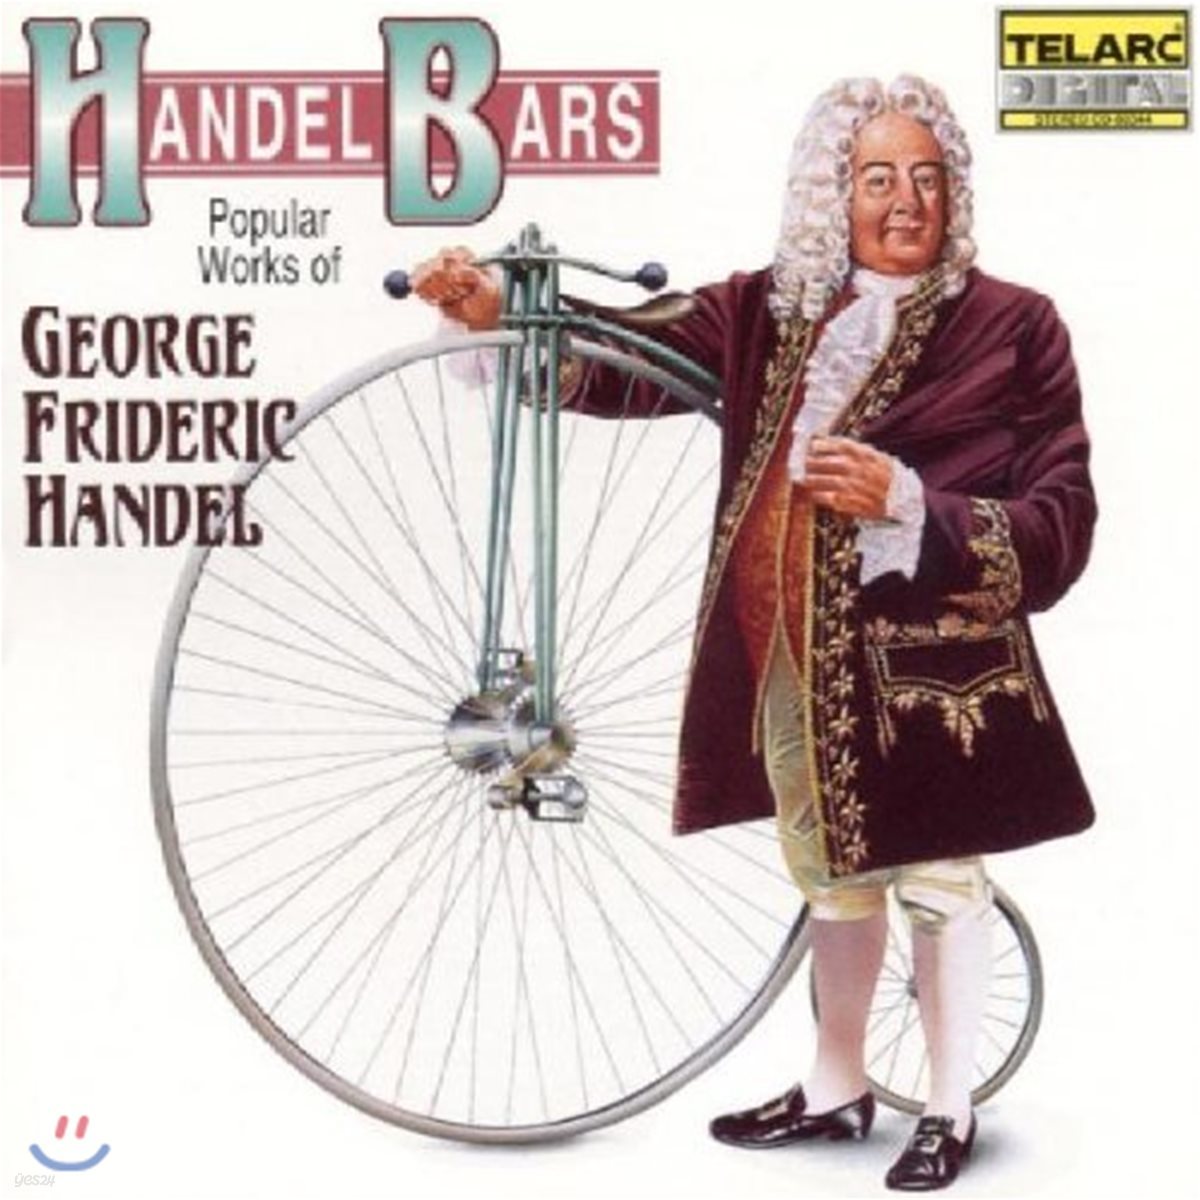 헨델 바 - 헨델 인기곡 모음 (Handel Bars - Popular Works of George Frideric Handel)